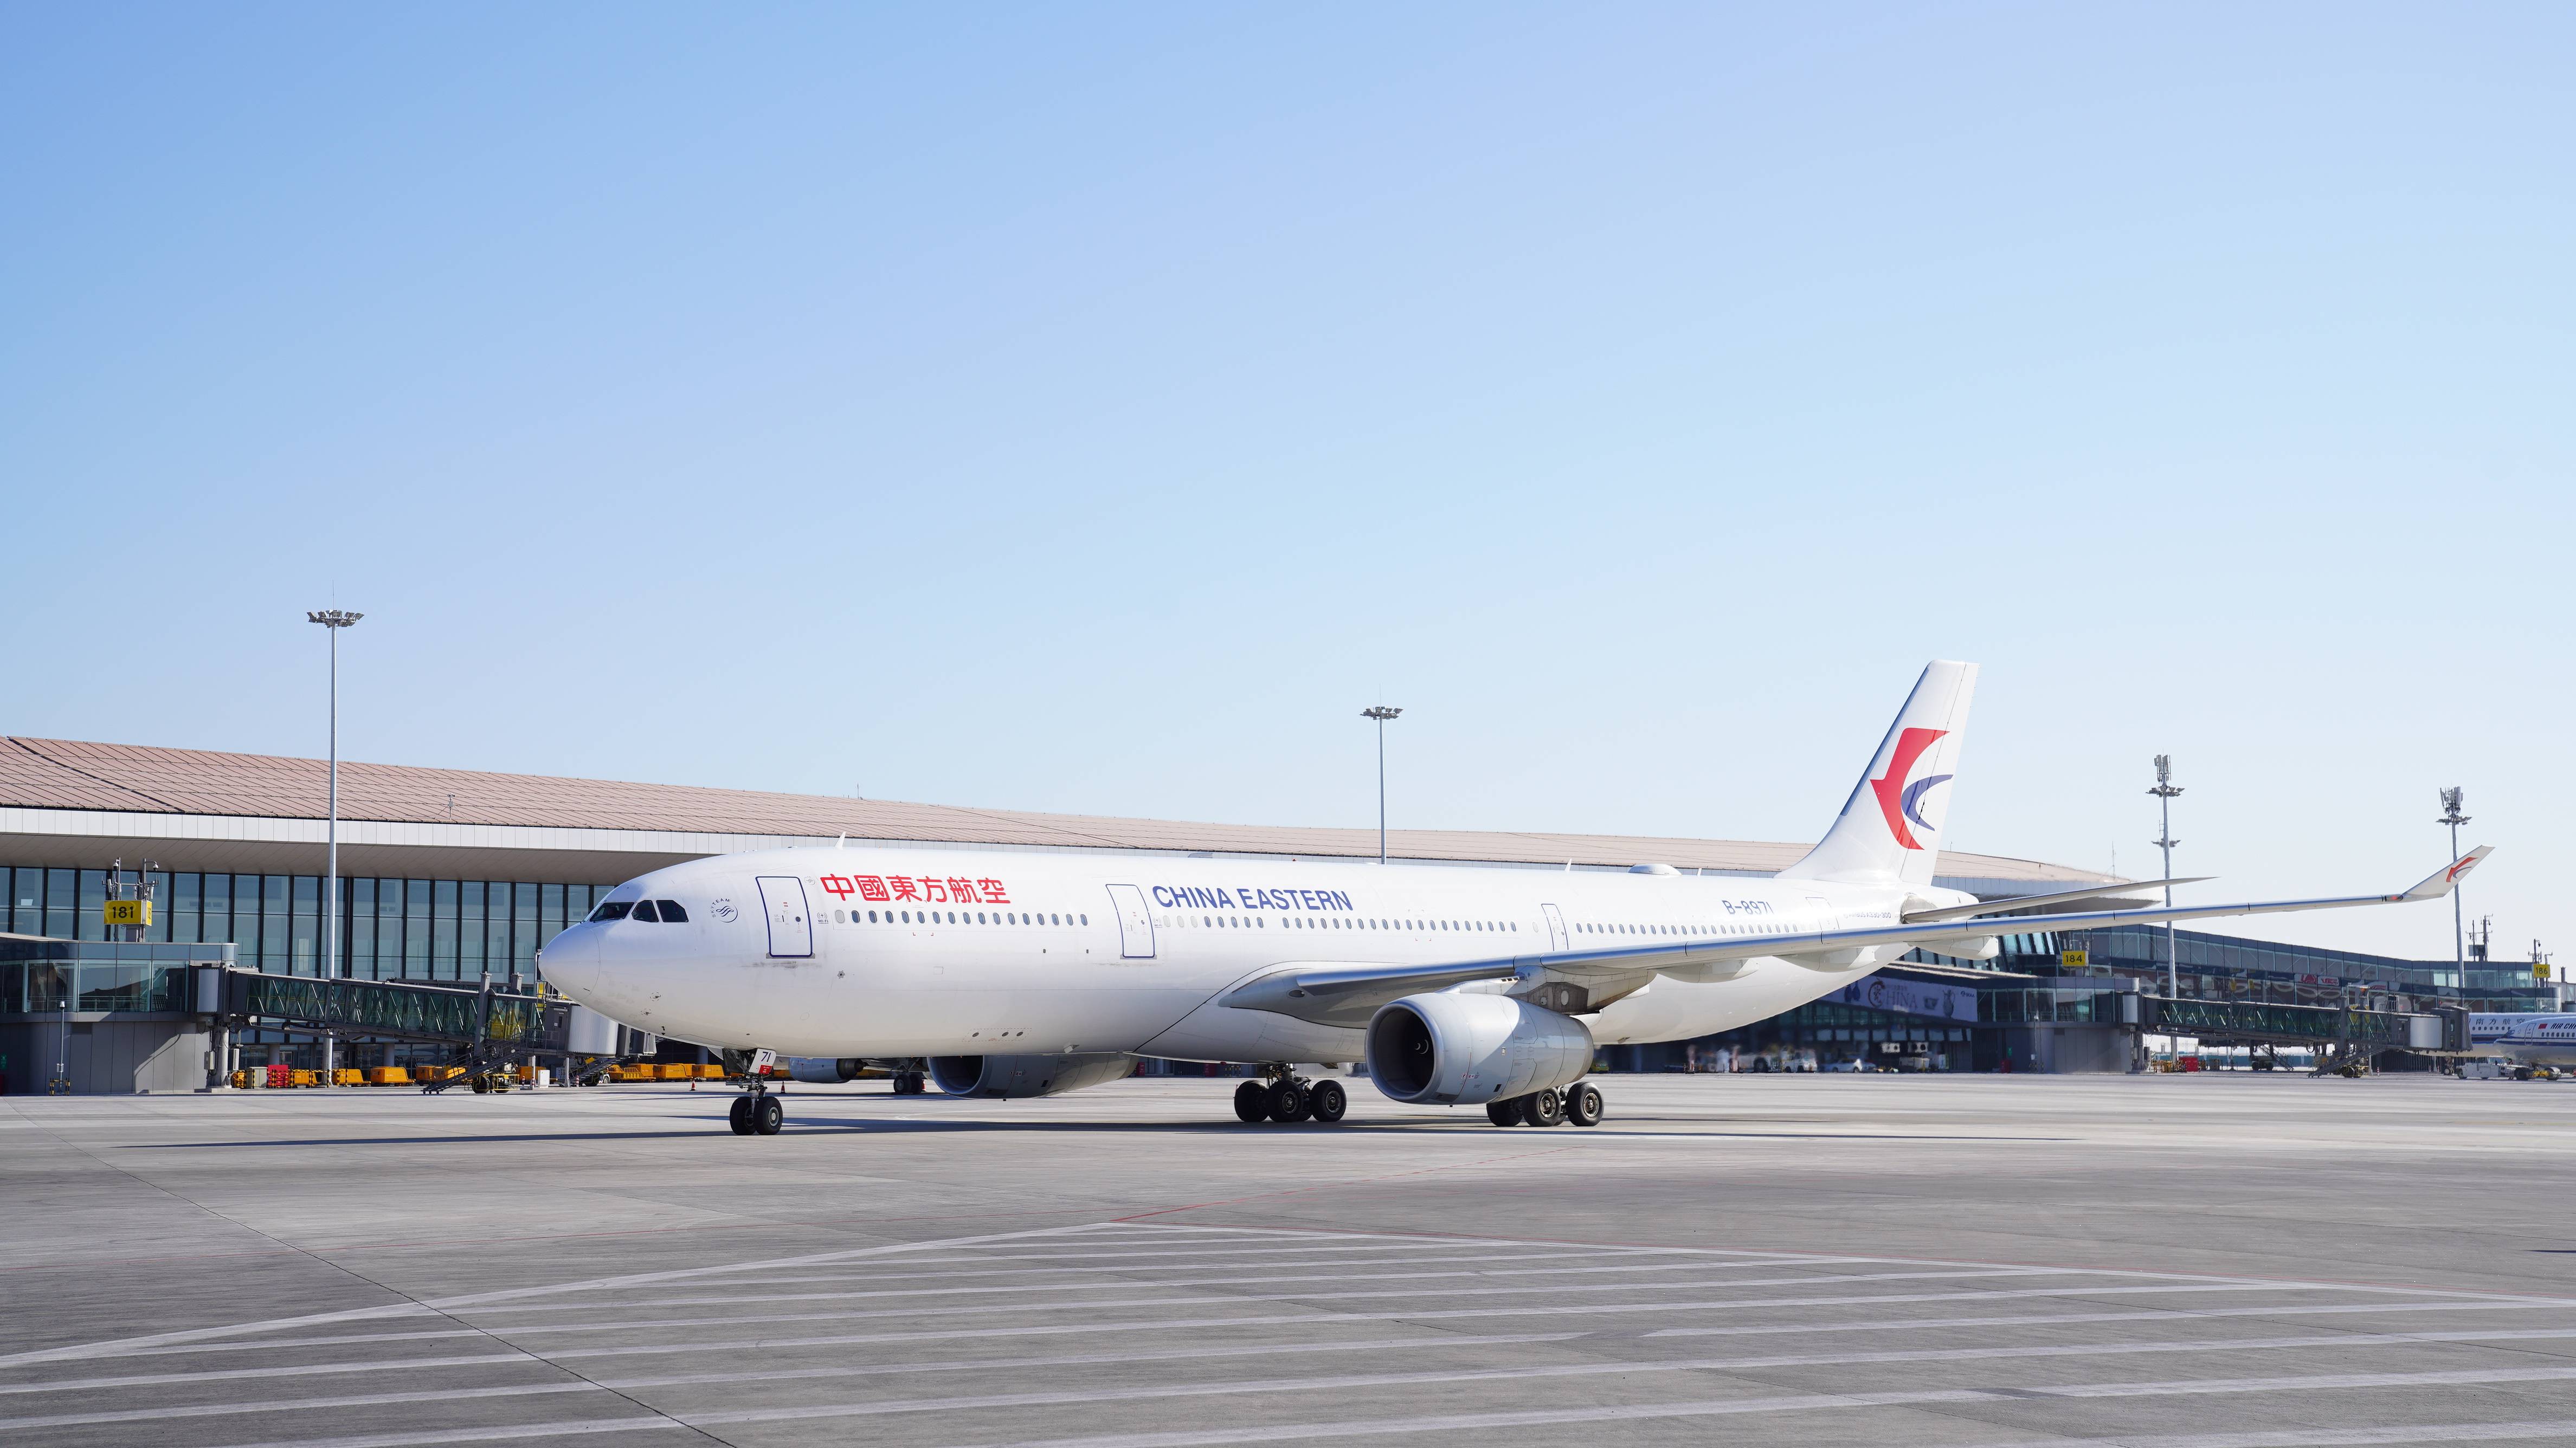 中联航首次引入空客a330宽体机,全新会员积分业务同日